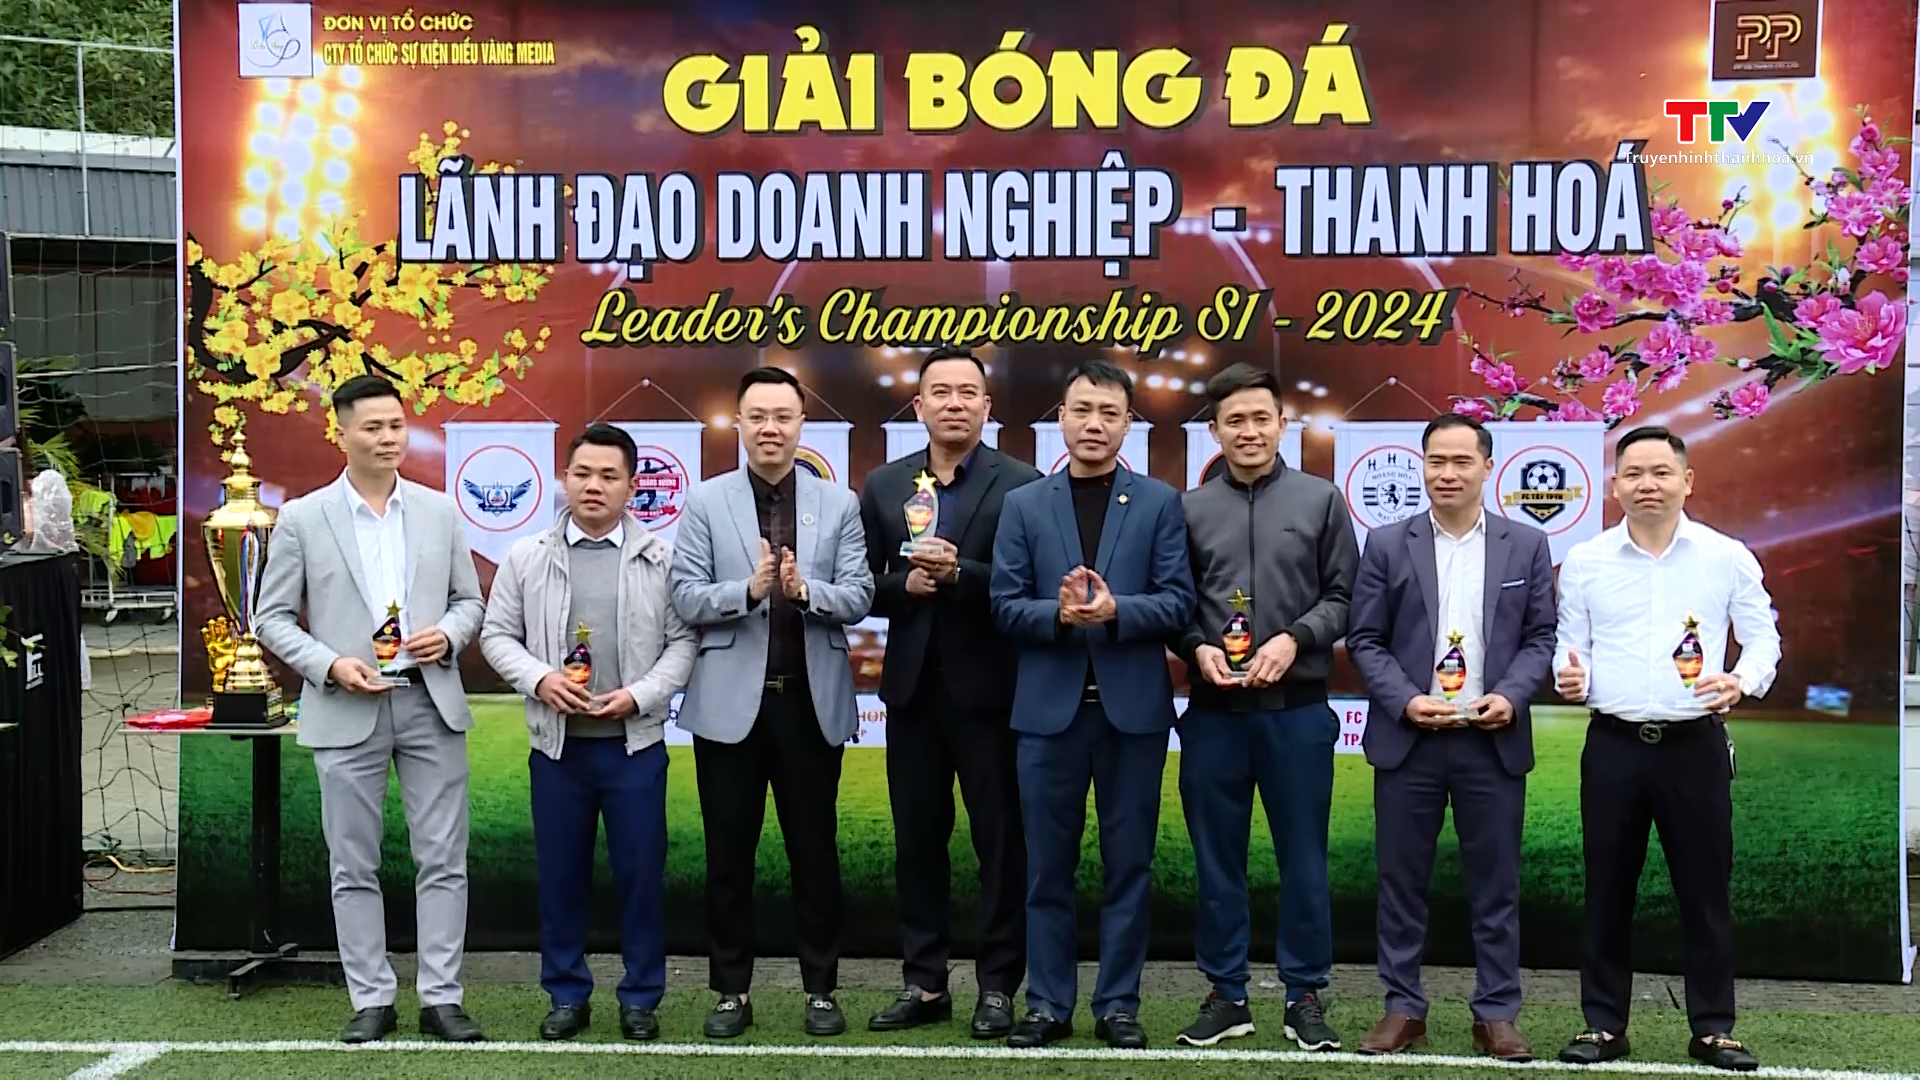 Khai mạc Giải bóng đá Lãnh đạo doanh nghiệp Thanh Hóa mở rộng lần thứ nhất năm 2024 - Ảnh 1.